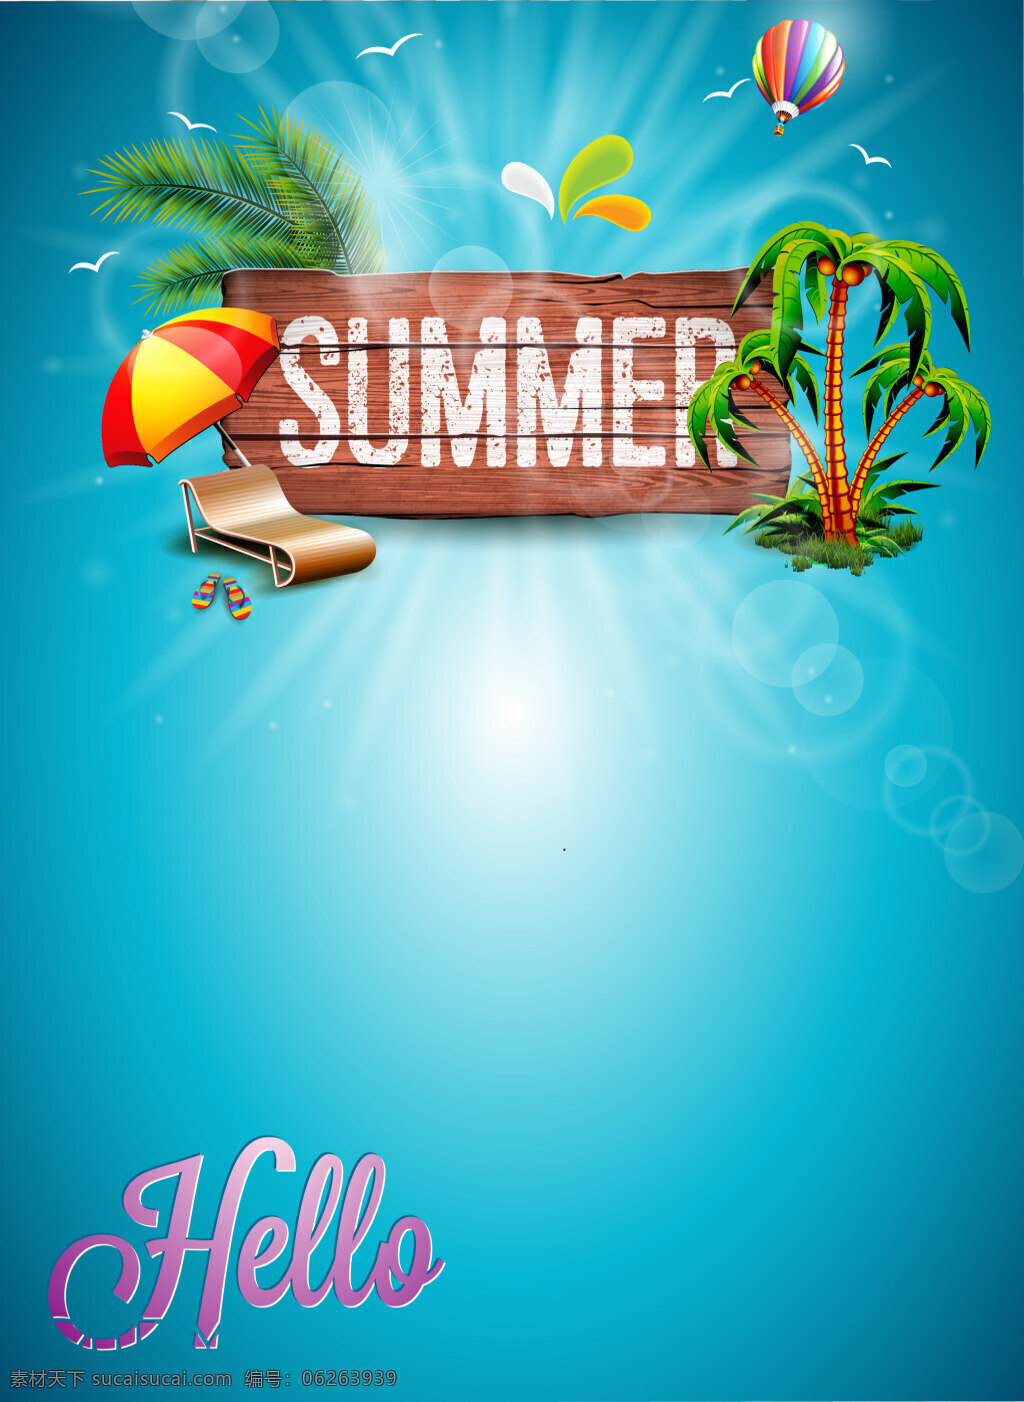 夏日 大 木板 标题 海报 背景 summer 开心 蓝色 模板 矢量 太阳伞 夏季 椰子树